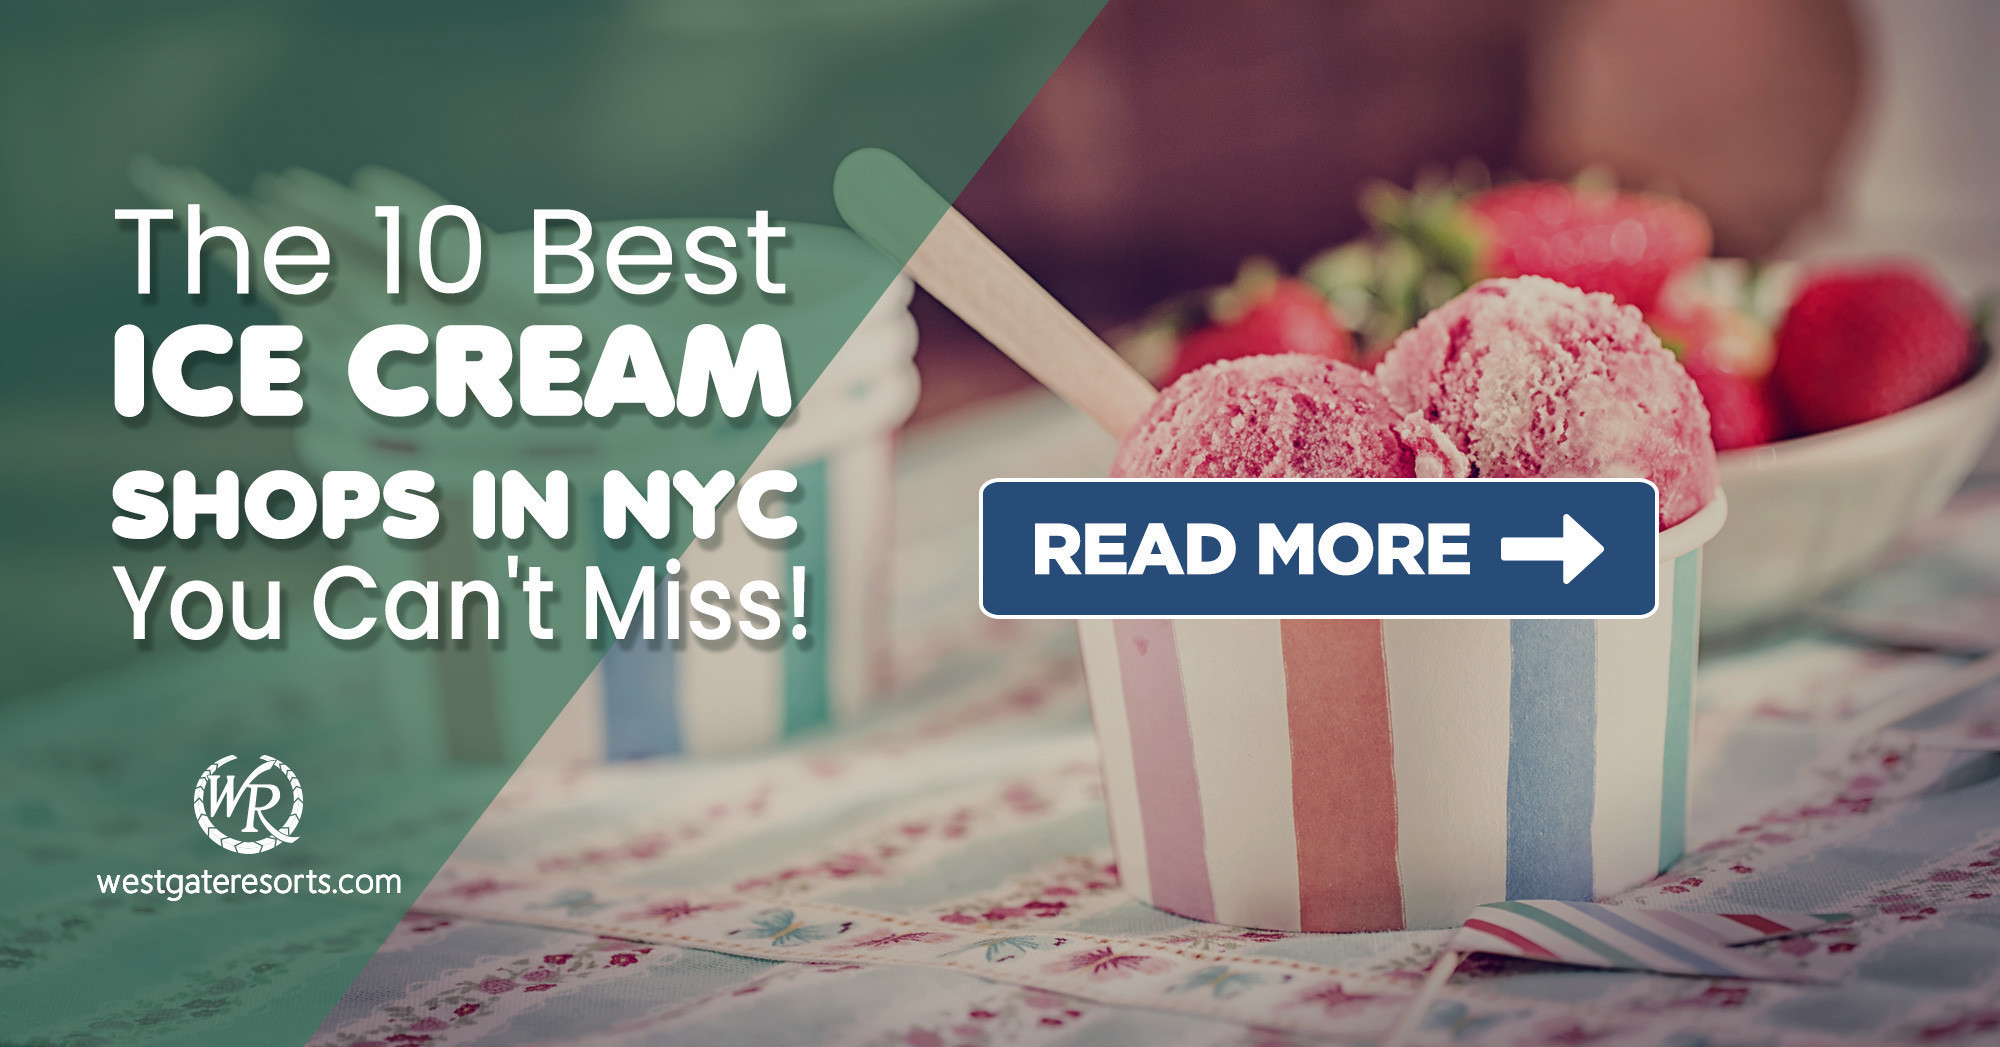 ¡Las 10 mejores heladerías de Nueva York para mantenerte relajado!